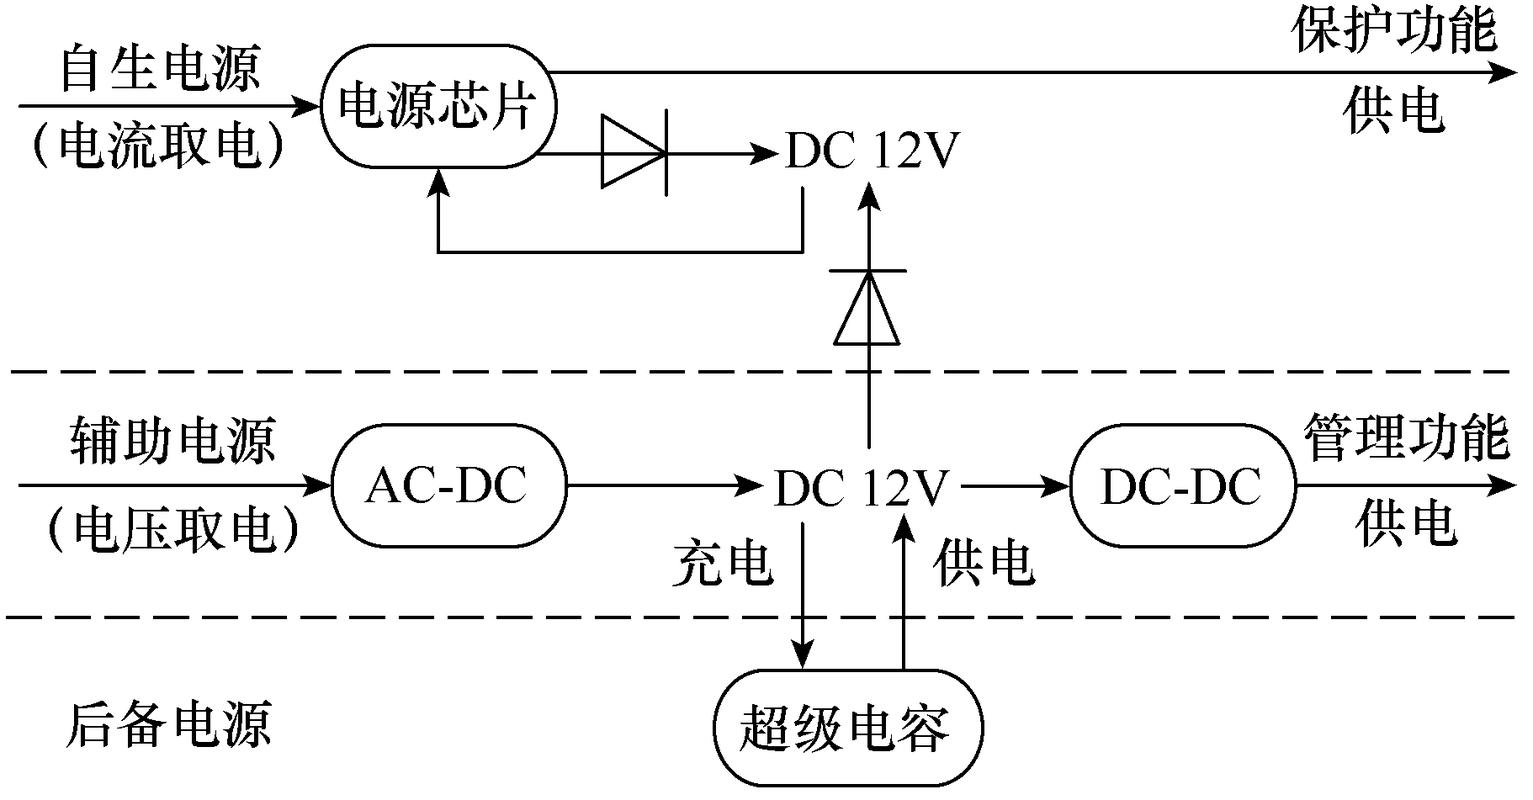 北京国电通网络技术公司研究团队提出双芯低压智能断路器方案